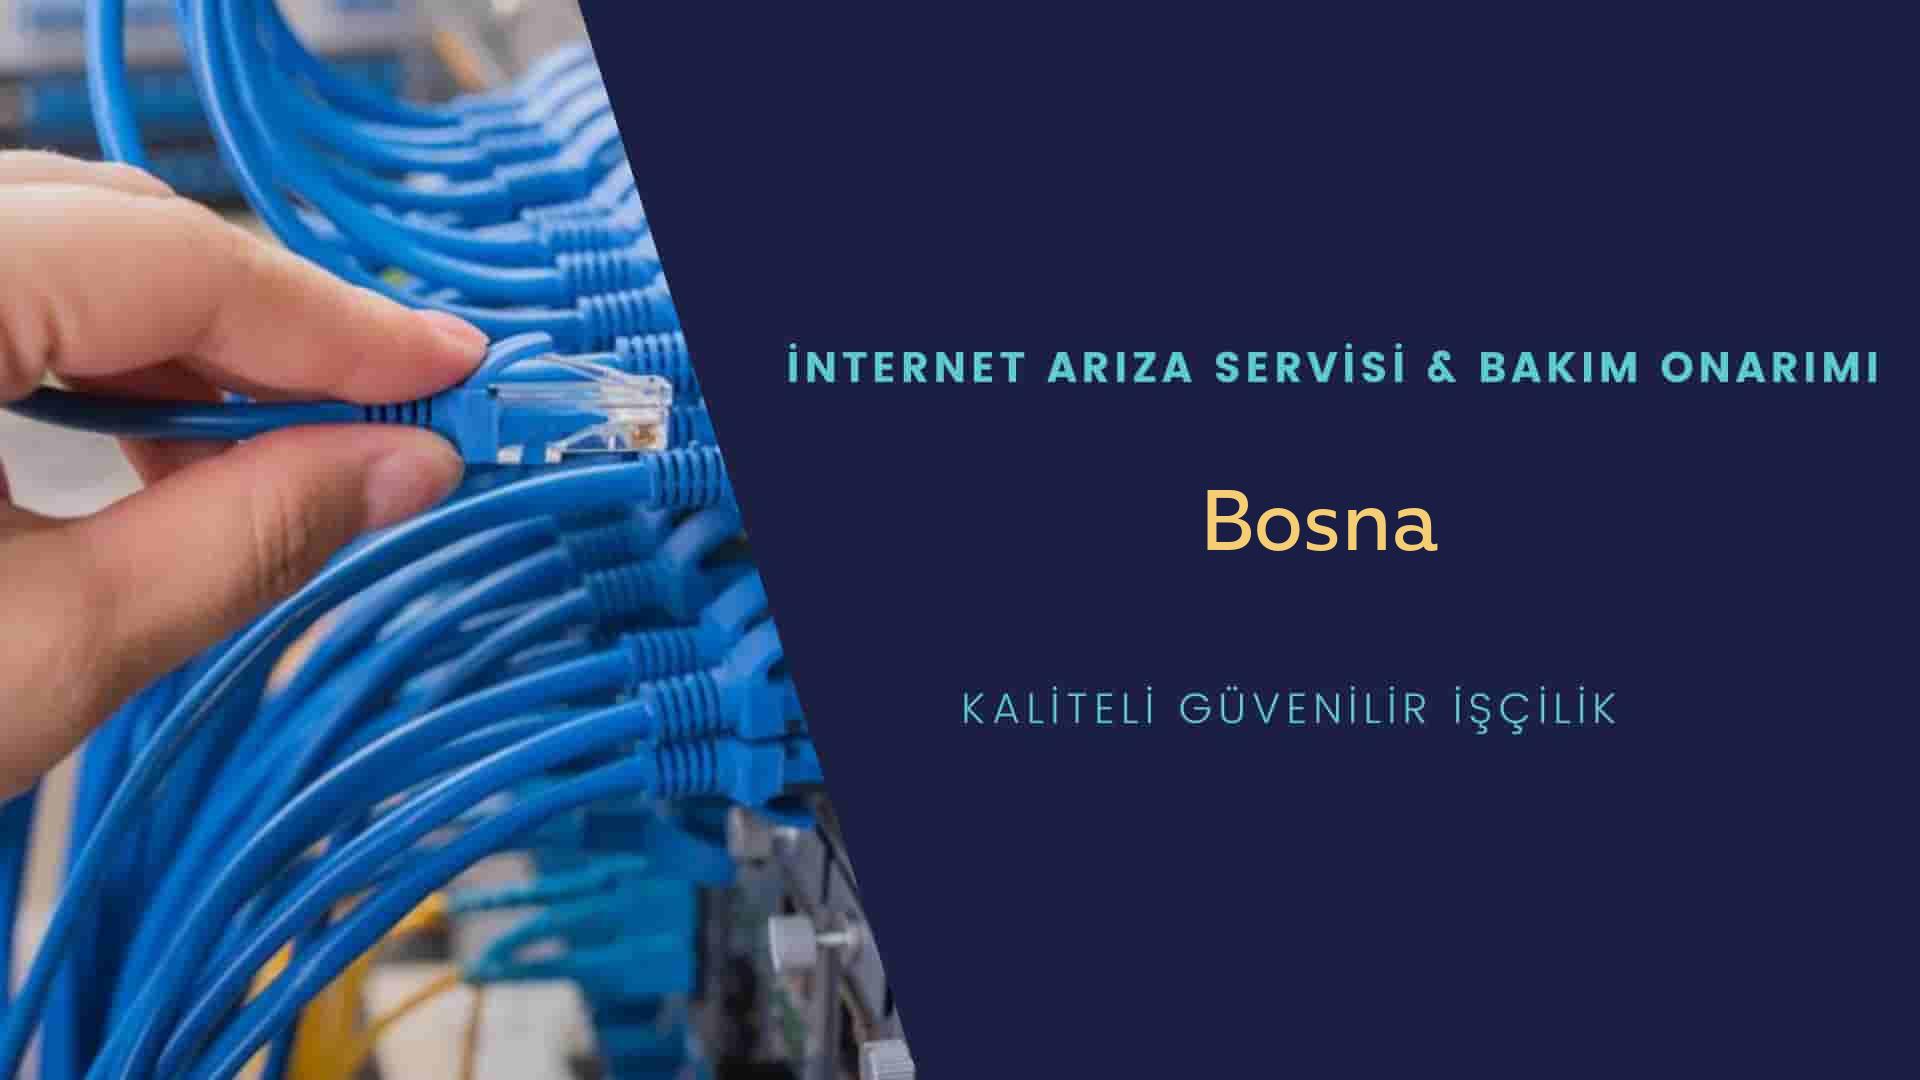 Bosna internet kablosu çekimi yapan yerler veya elektrikçiler mi? arıyorsunuz doğru yerdesiniz o zaman sizlere 7/24 yardımcı olacak profesyonel ustalarımız bir telefon kadar yakındır size.